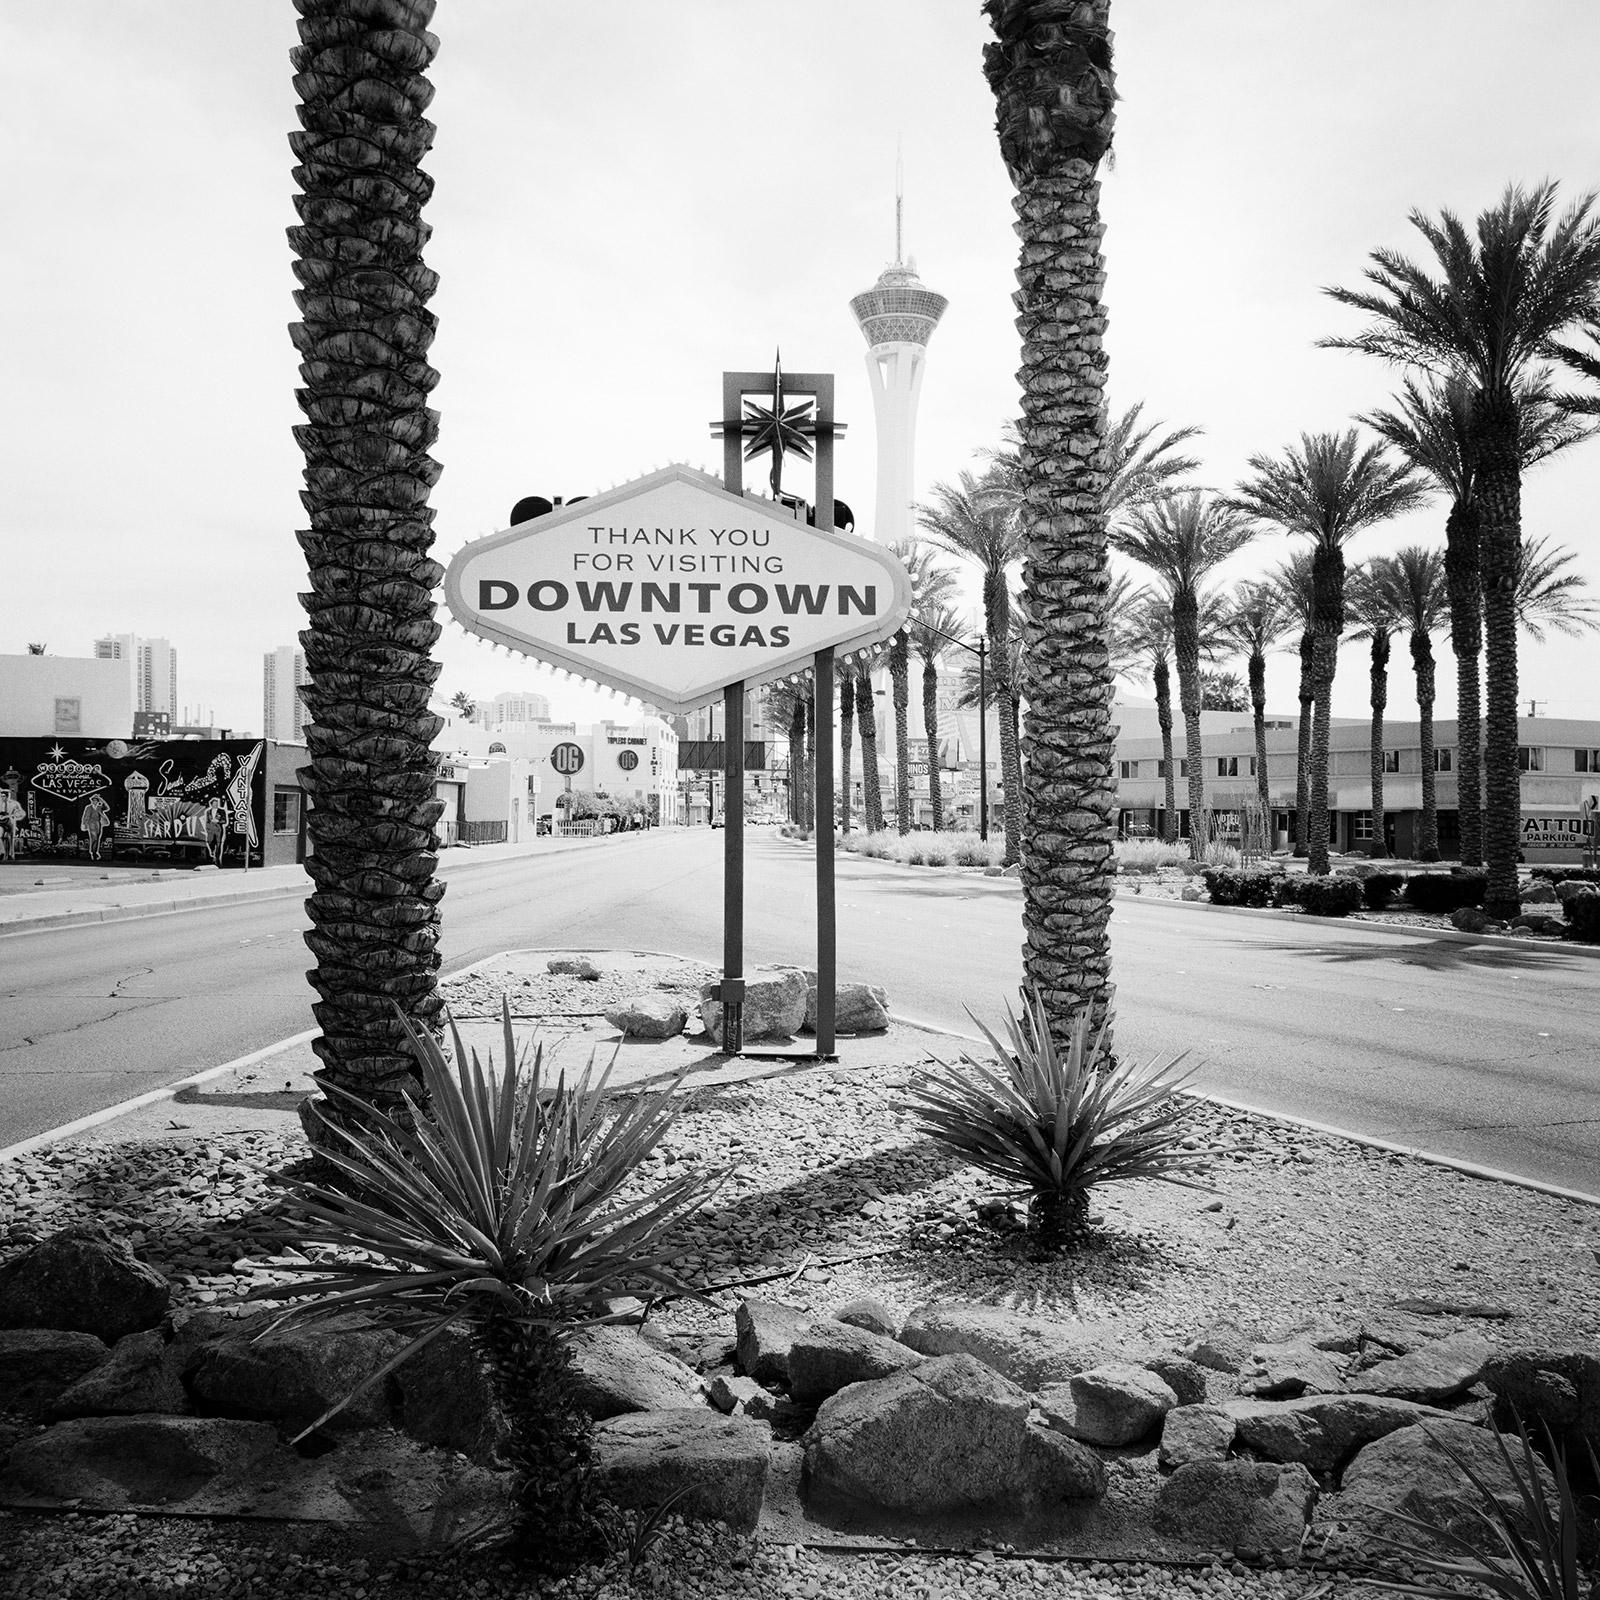 Gerald Berghammer, Ina Forstinger Black and White Photograph – Downtown Las Vegas, Nevada, USA – zeitgenössischer Schwarz-Weiß-Landschaftsdruck